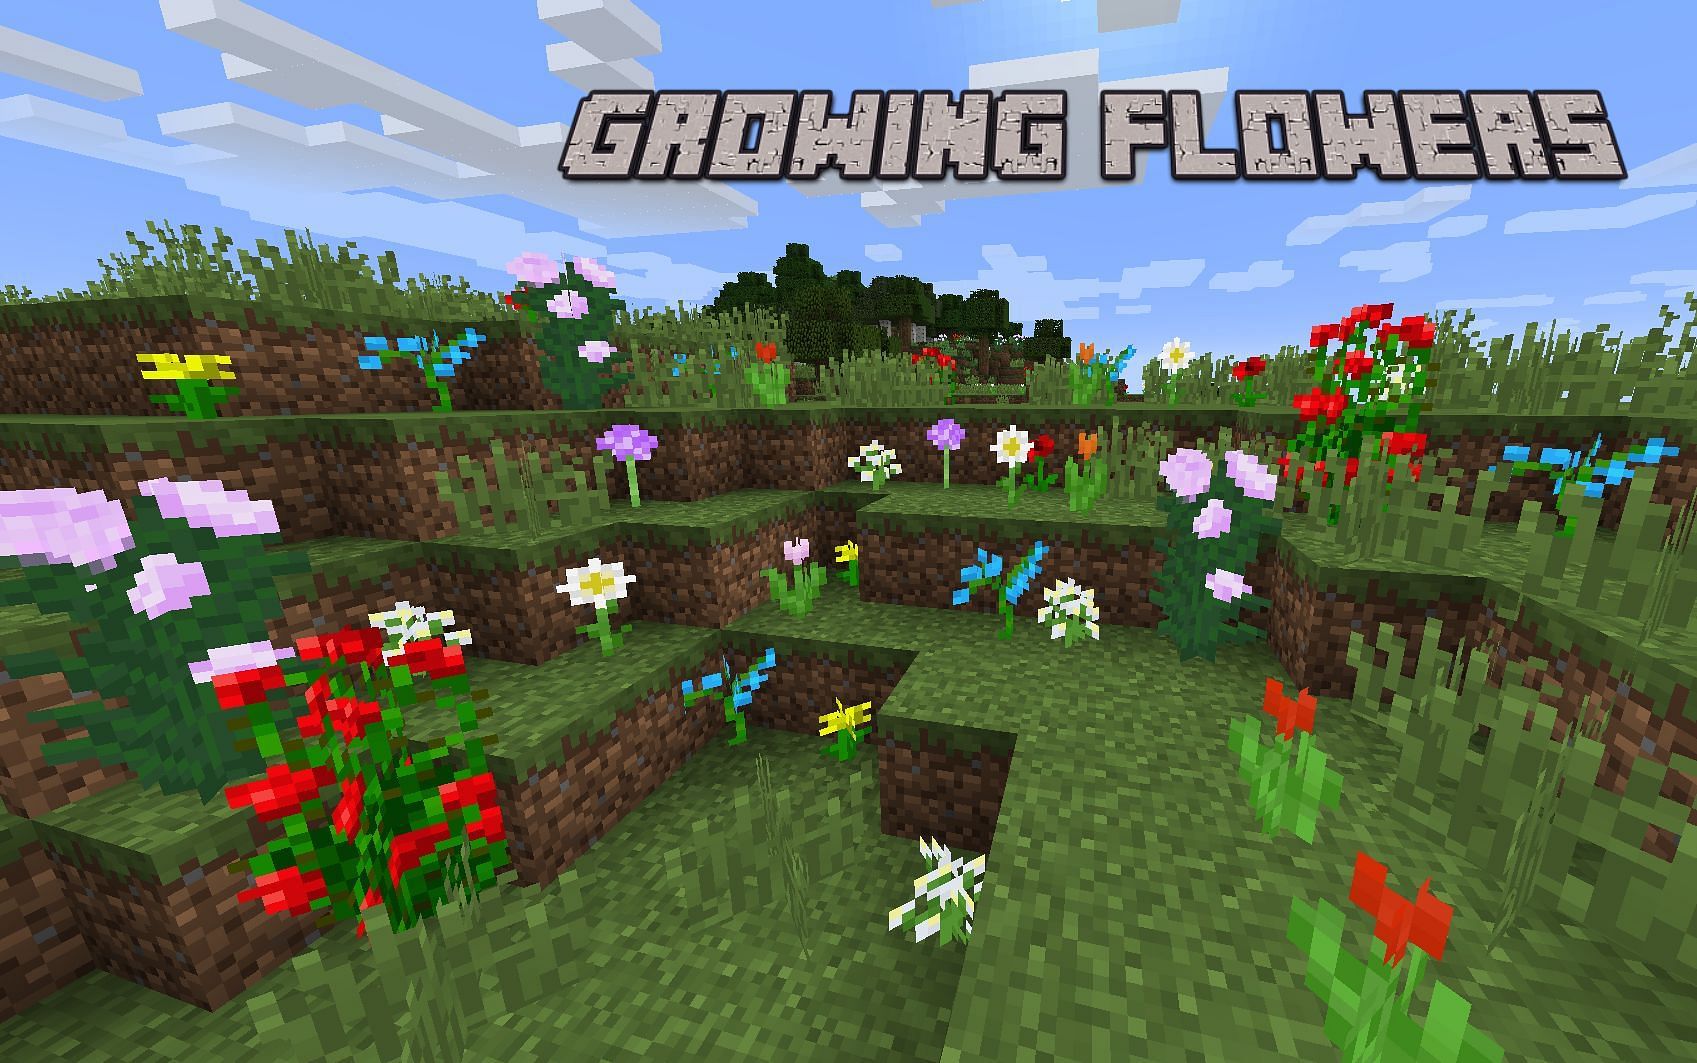 Flowers in Minecraft (Image via Minecraft Wiki)